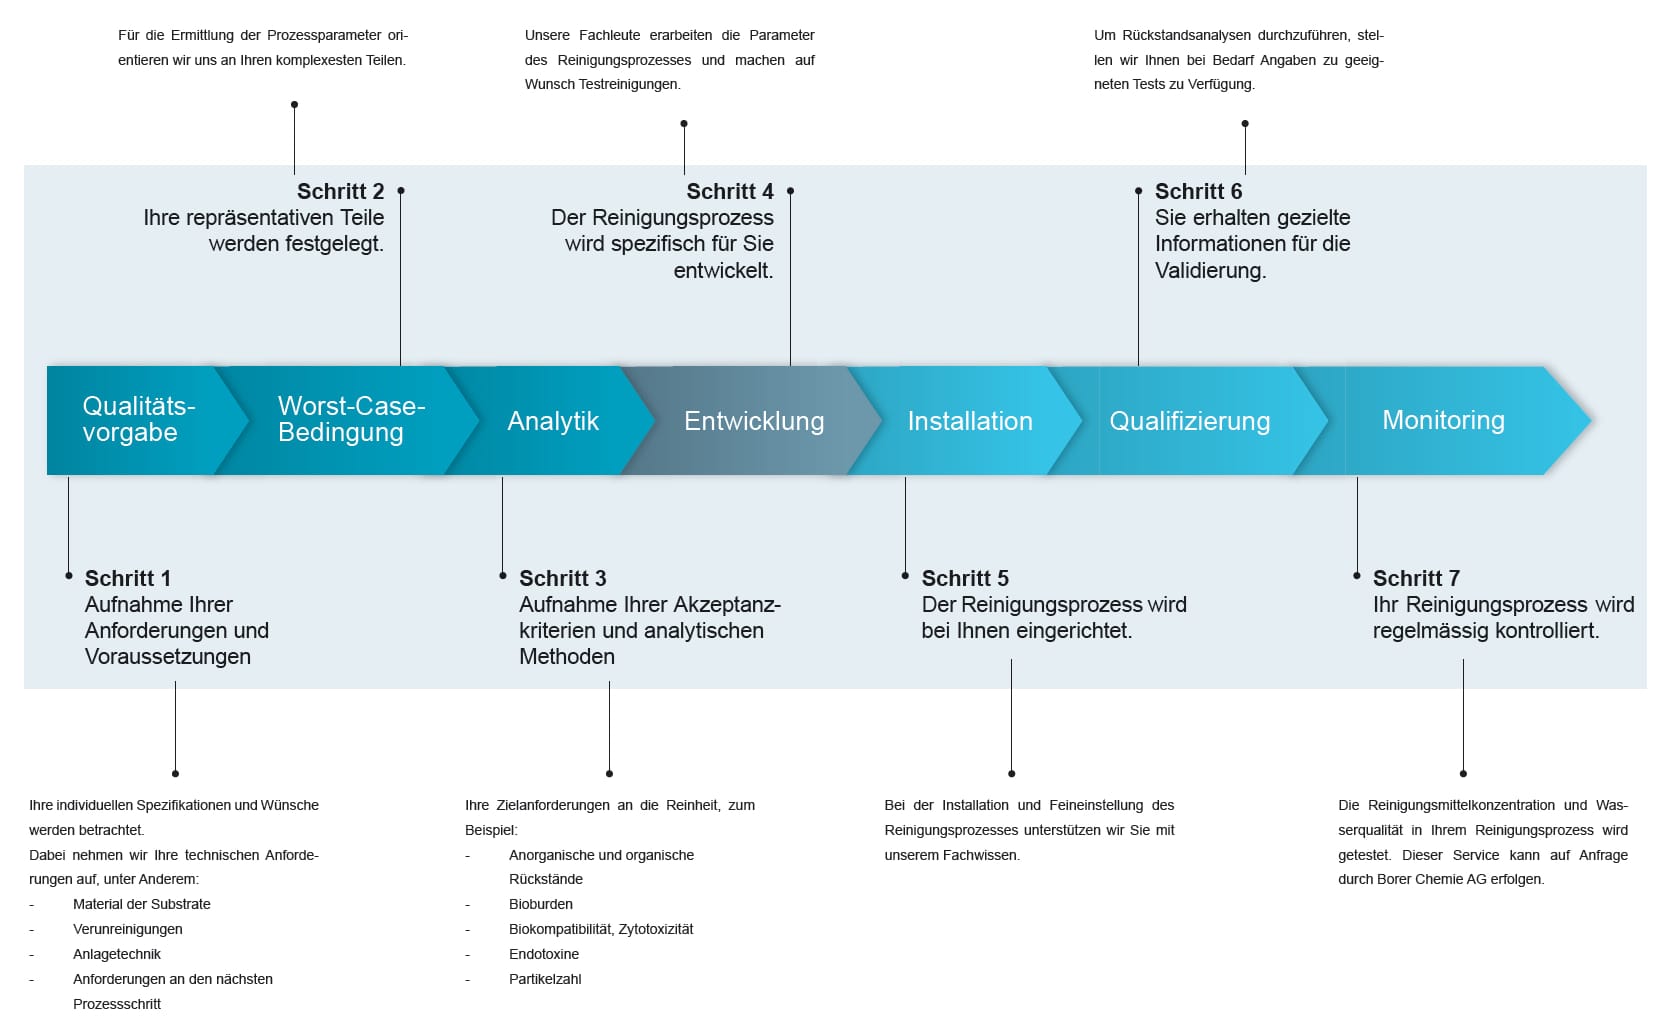 Ablaufschema des 7-Schritt-Vorgehens zur Entwicklung eines Teilereinigungsprozess in der MT-Branche